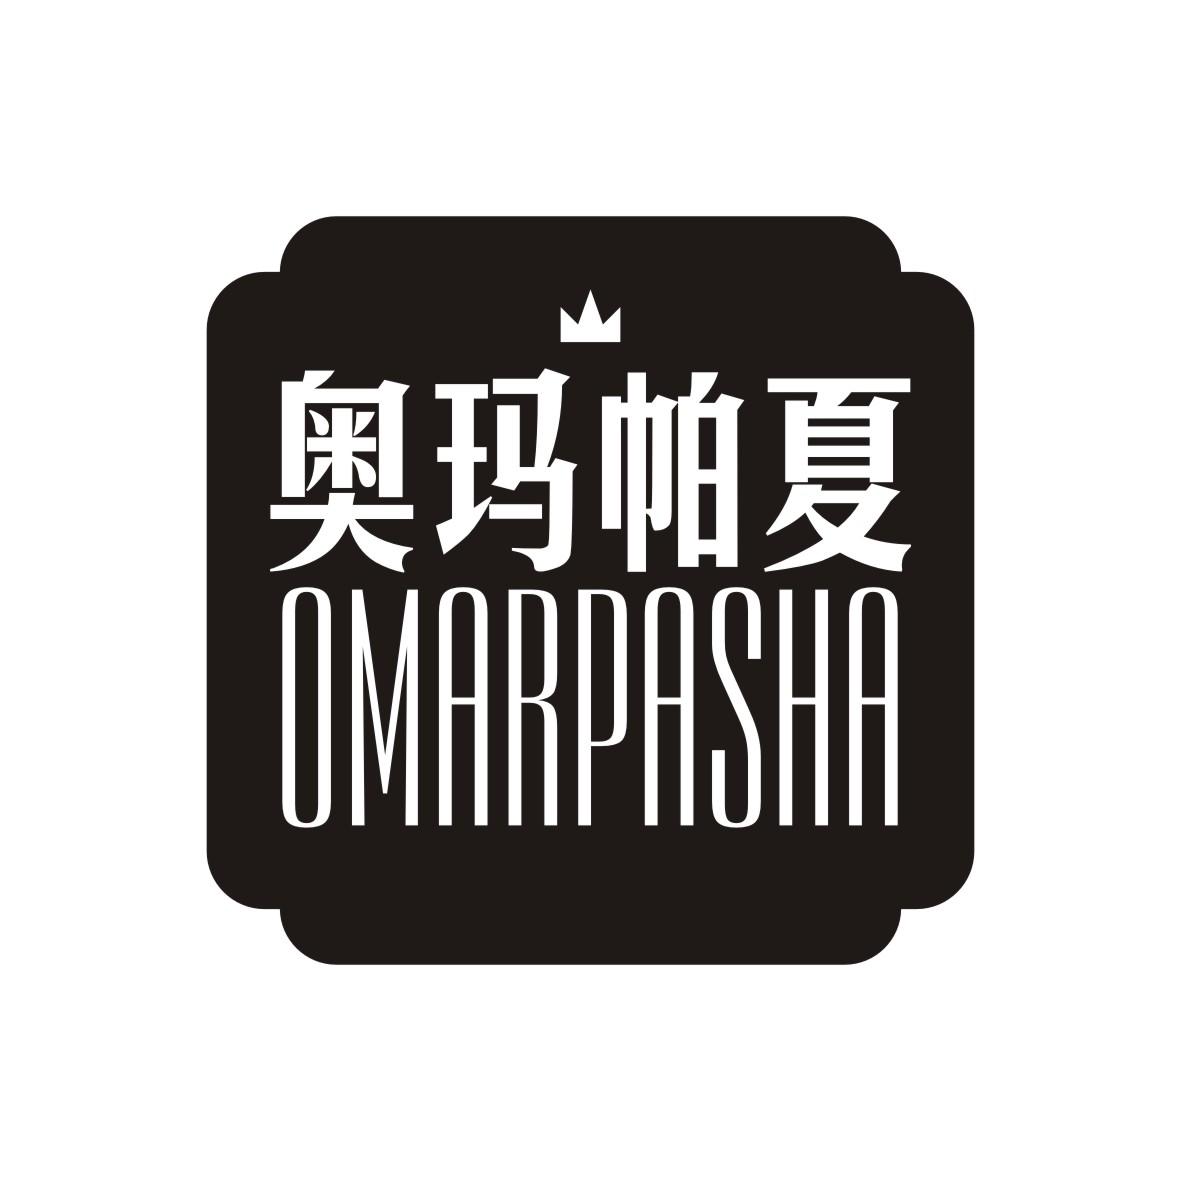 奥玛帕夏 OMARPASHA